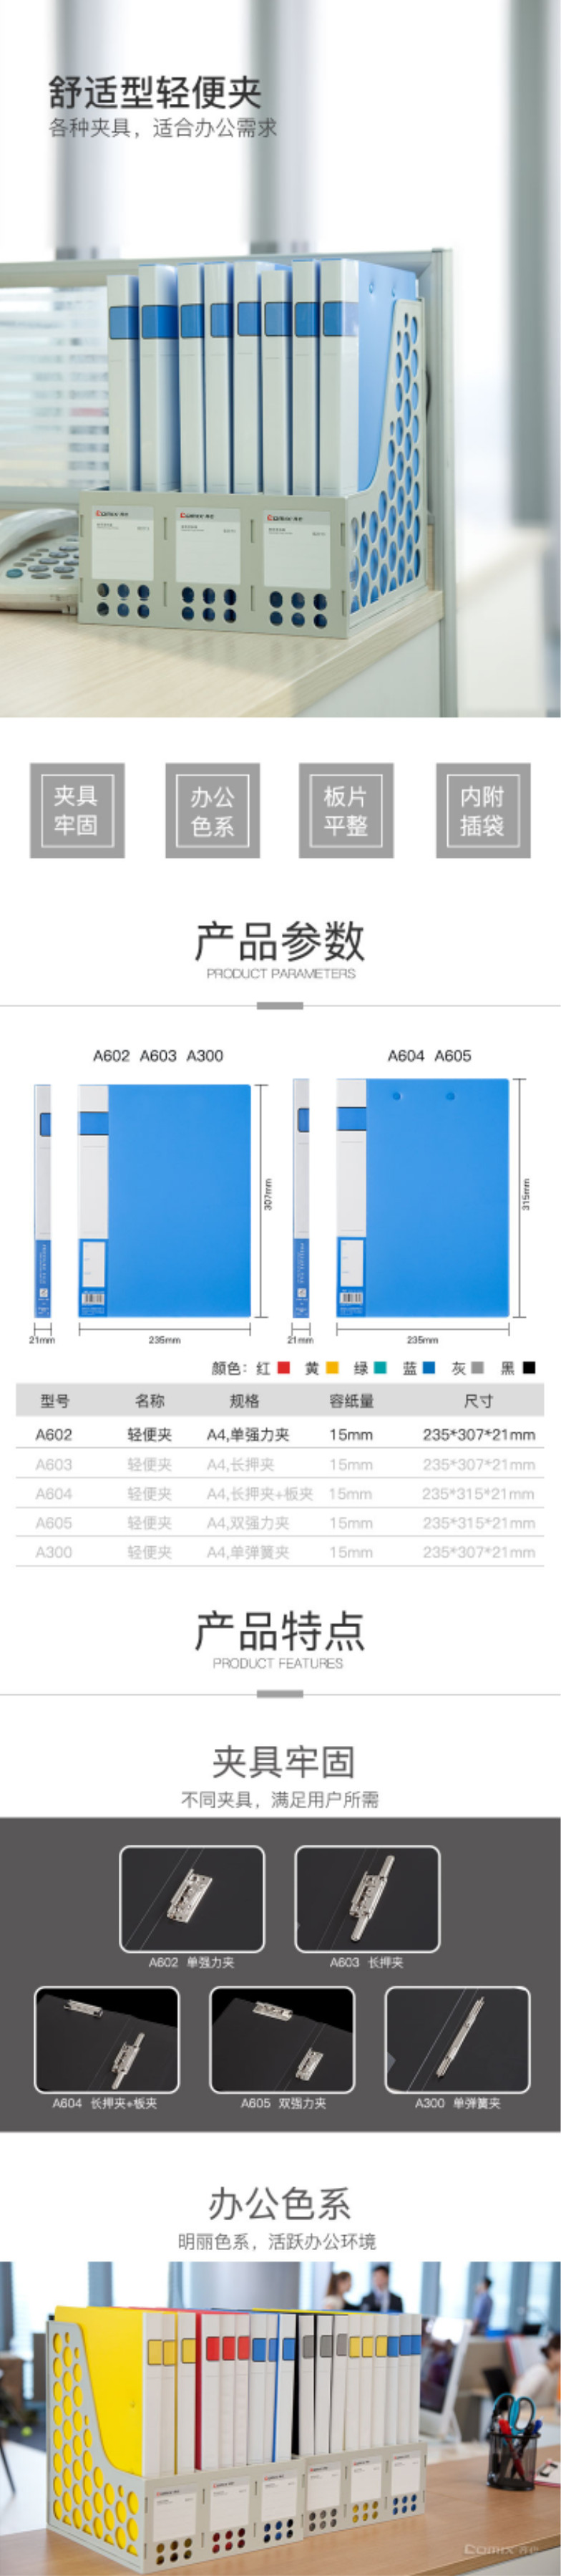 齐心 Comix A602 单强力夹 A4 蓝色  2.jpg